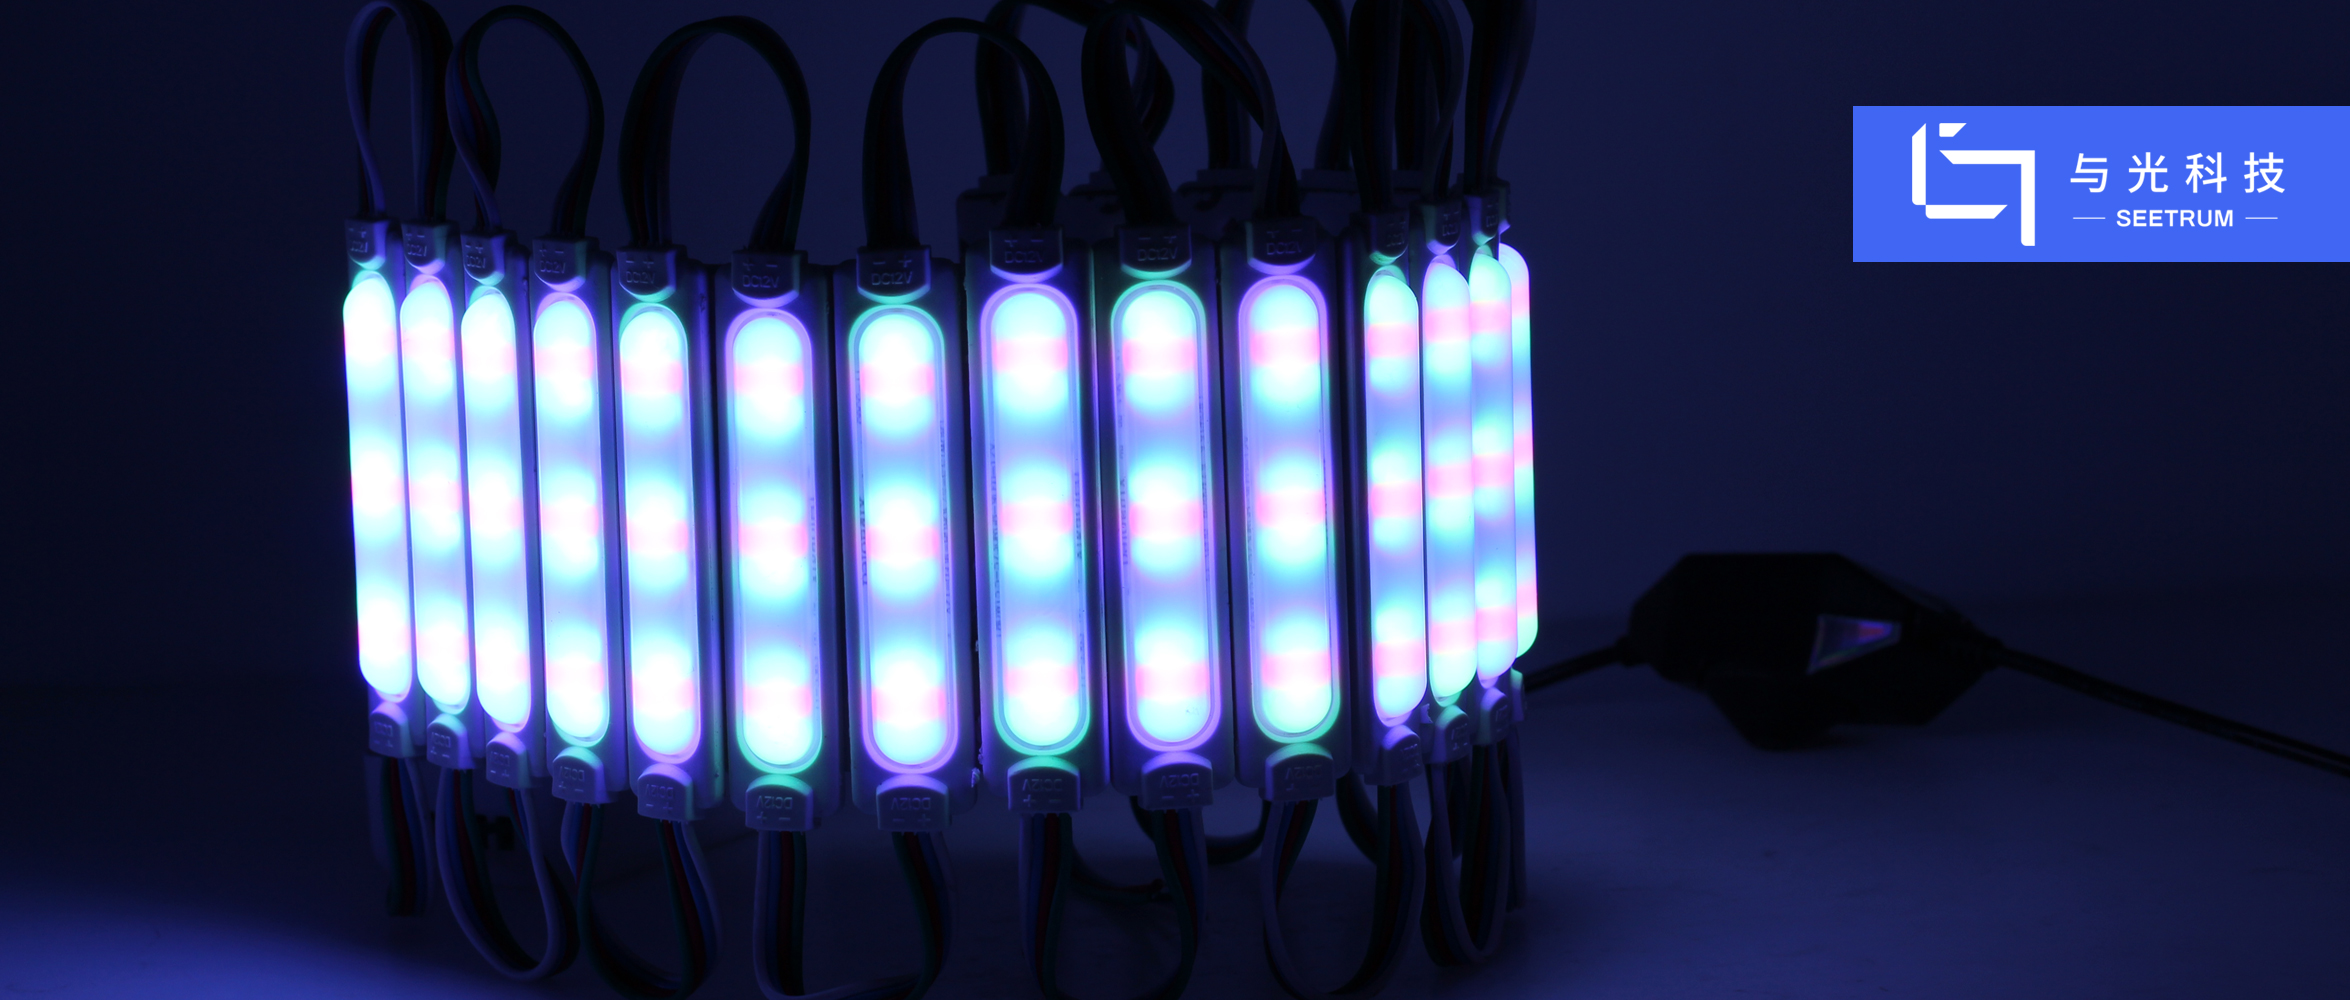 亚游ag9com|能源科技有限公司光谱传感芯片助力LED照明更加健康化、智能化